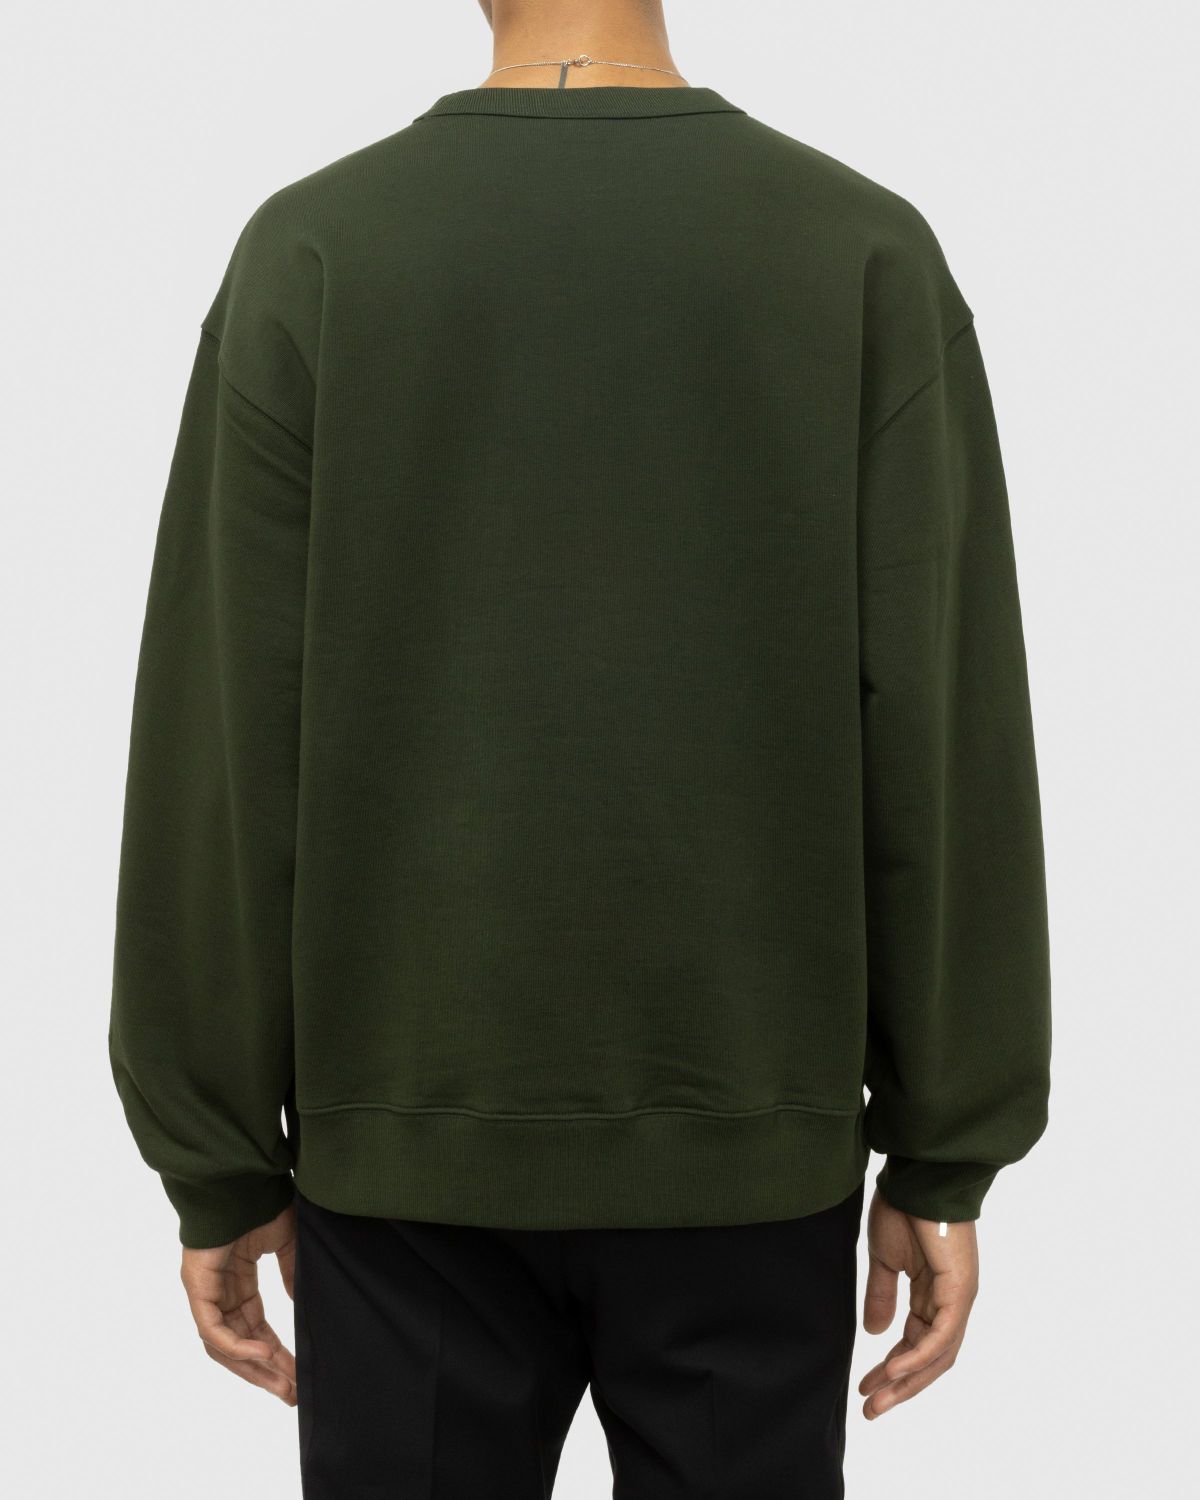 Dries van Noten – Hax Oversized Crewneck Green - Sweatshirts - Green - Image 4